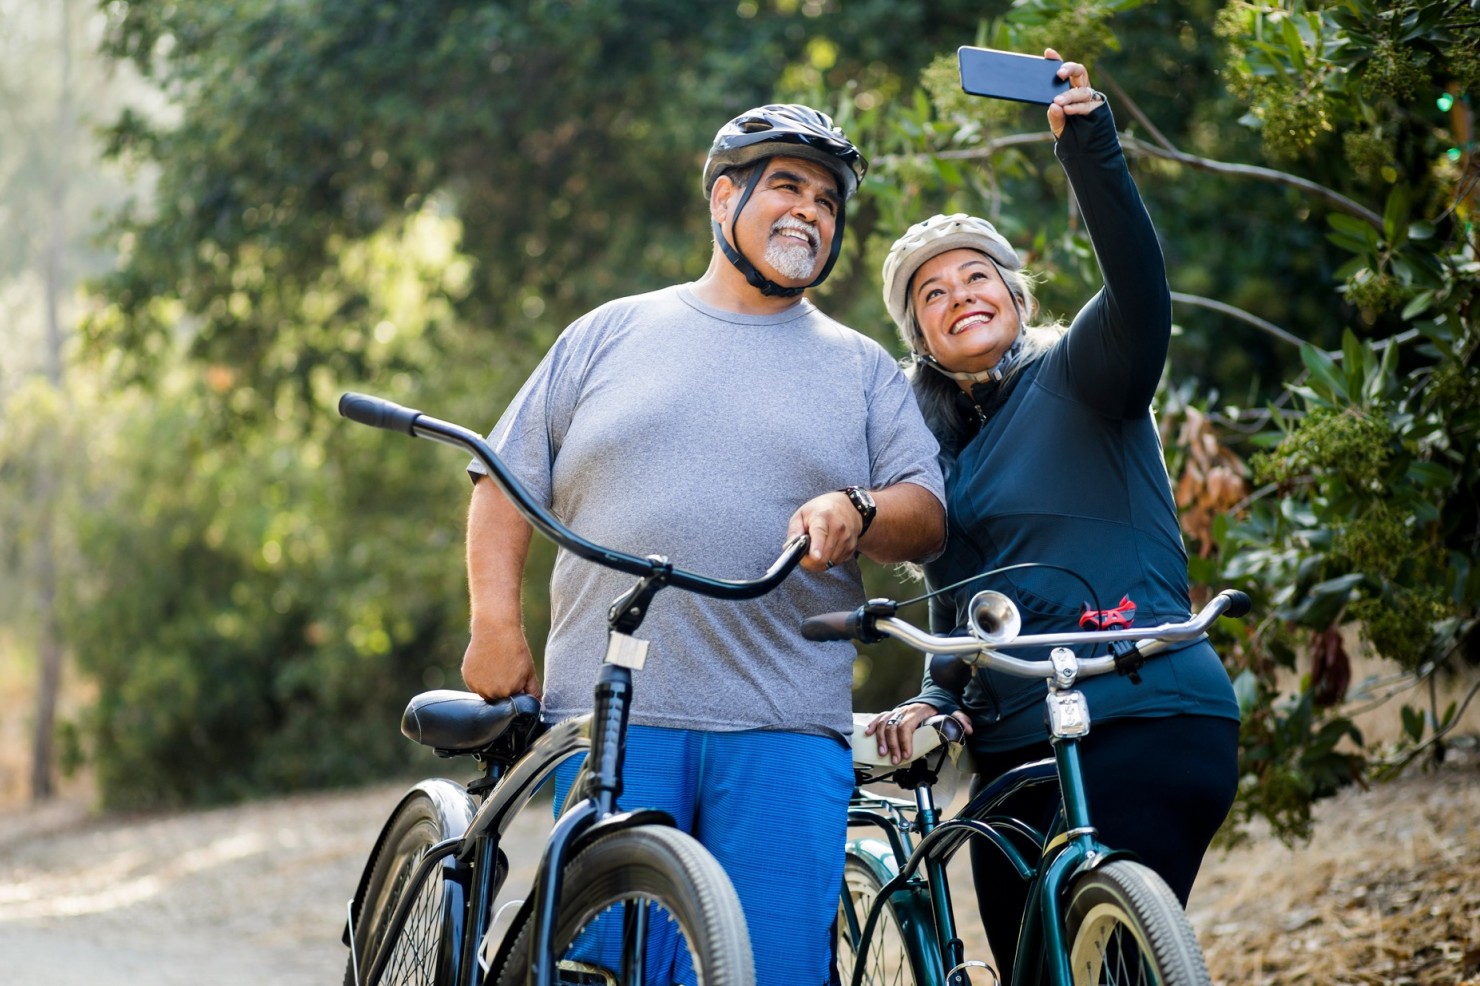 Ein Paar, Anfang 70, steht mit ihren Fahrrädern draußen im Grünen und macht ein Selfie. Sie tragen beide Fahrradhelme und lächeln in das Smartphone, das die Frau hält. Beide sind überwichtig. Sie strahlen Aktivität und Energie aus.